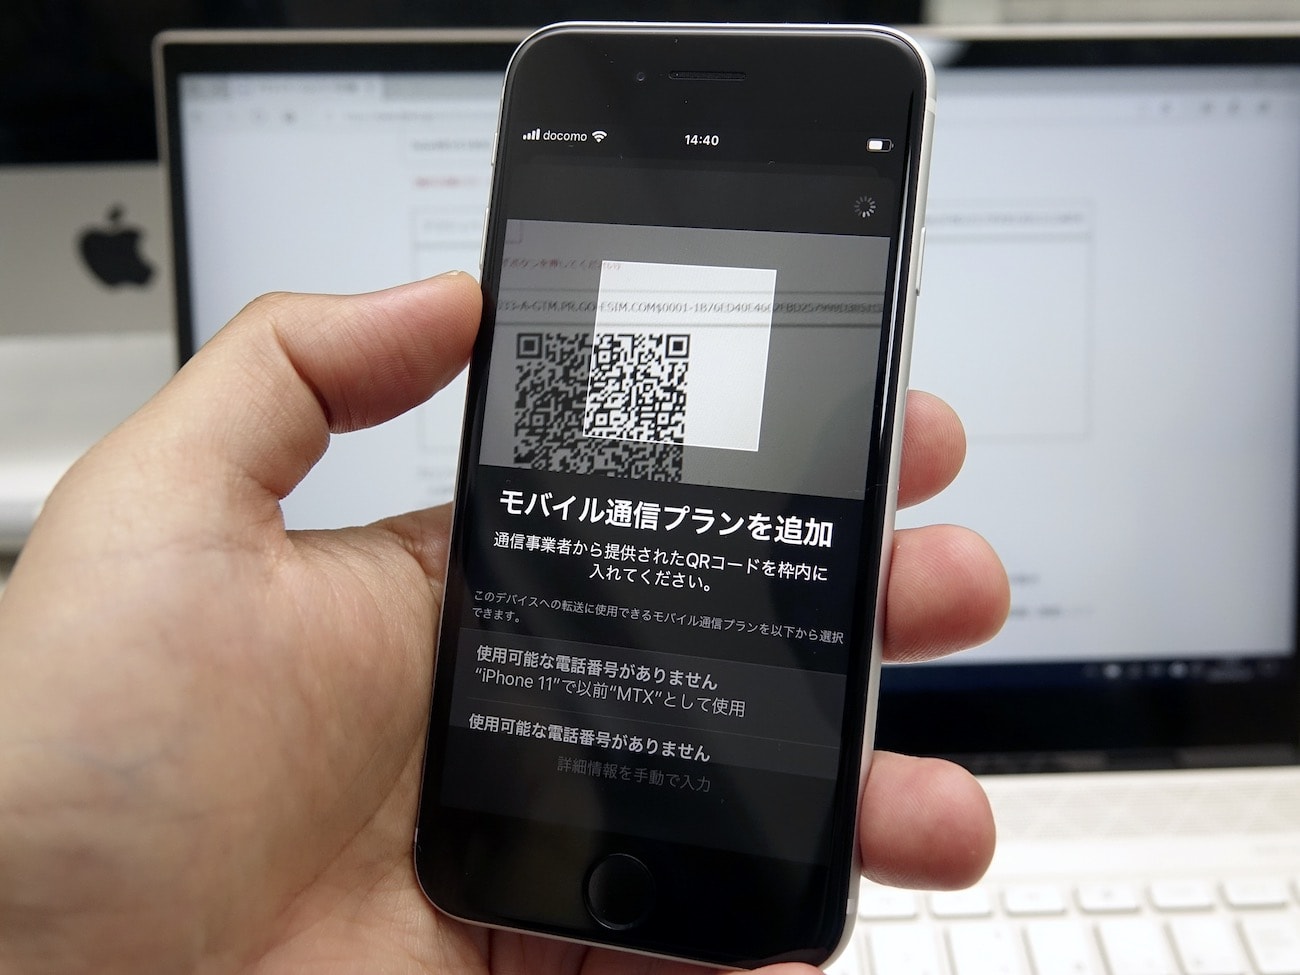 発売目前 第2世代iphone Seまとめ コスパ抜群でこれからのスタンダードiphoneに Engadget 日本版